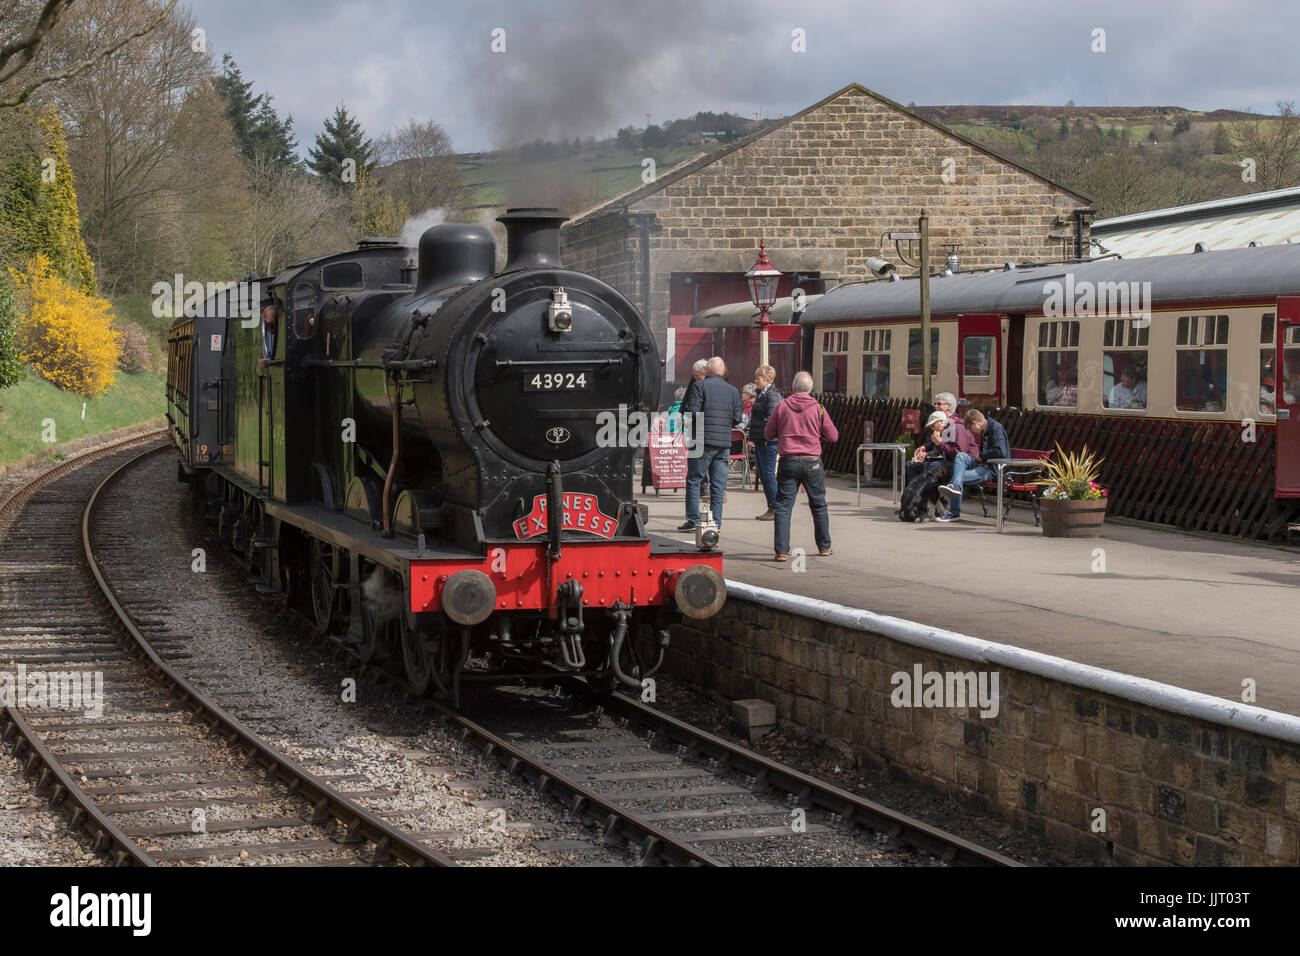 La gente mira una locomotora a vapor BR (ferrocarril Midland) 4F 0-6-0 43924 tirando hacia la estación, resoplando humo - Keighley & Worth Valley Railway, Inglaterra, Reino Unido. Foto de stock